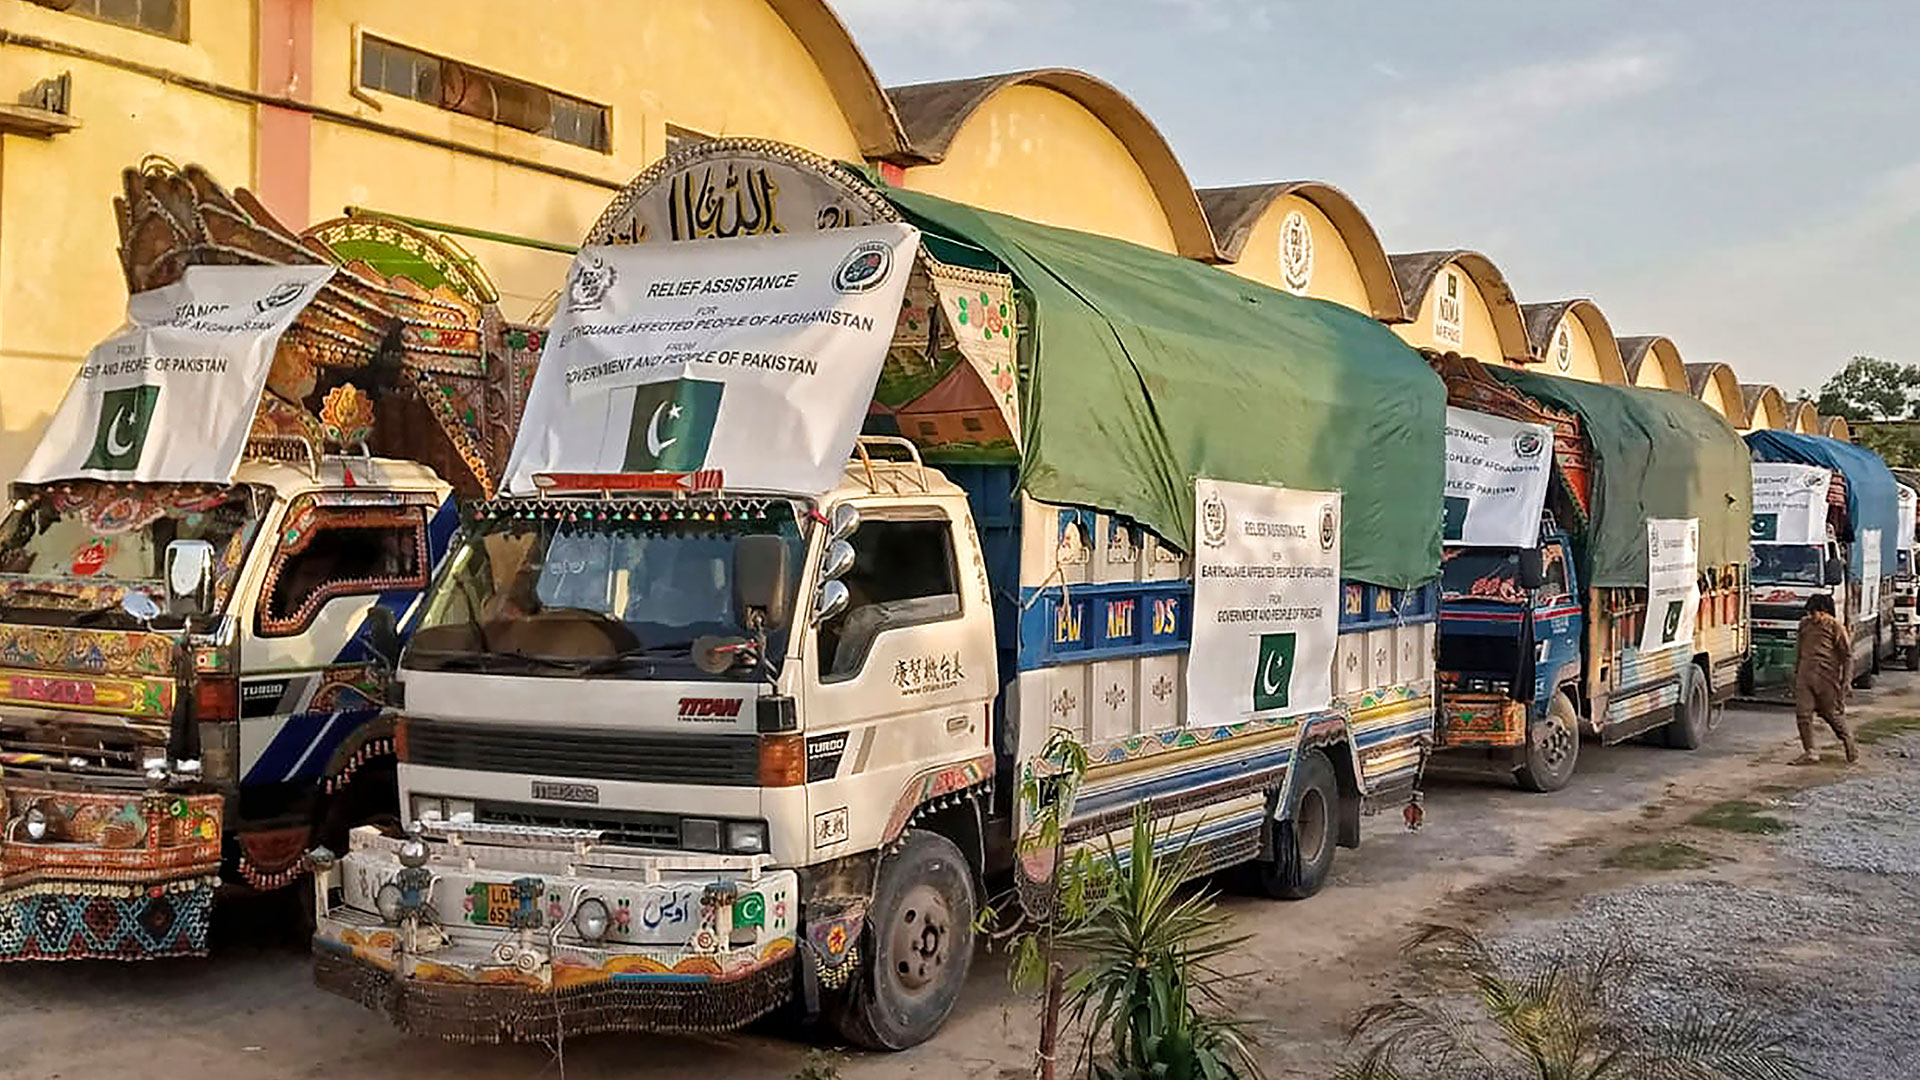 En esta foto publicada por la Autoridad Nacional de Gestión de Desastres de Pakistán, un convoy de camiones que transportan artículos de socorro, incluidas tiendas de campaña, mantas y medicamentos de emergencia para las zonas afectadas por el terremoto de Afganistán, se prepara para partir hacia Afganistán en un almacén en Islamabad, Pakistán, el jueves 23 de junio de 2022 (Autoridad Nacional de Manejo de Desastres vía AP)

